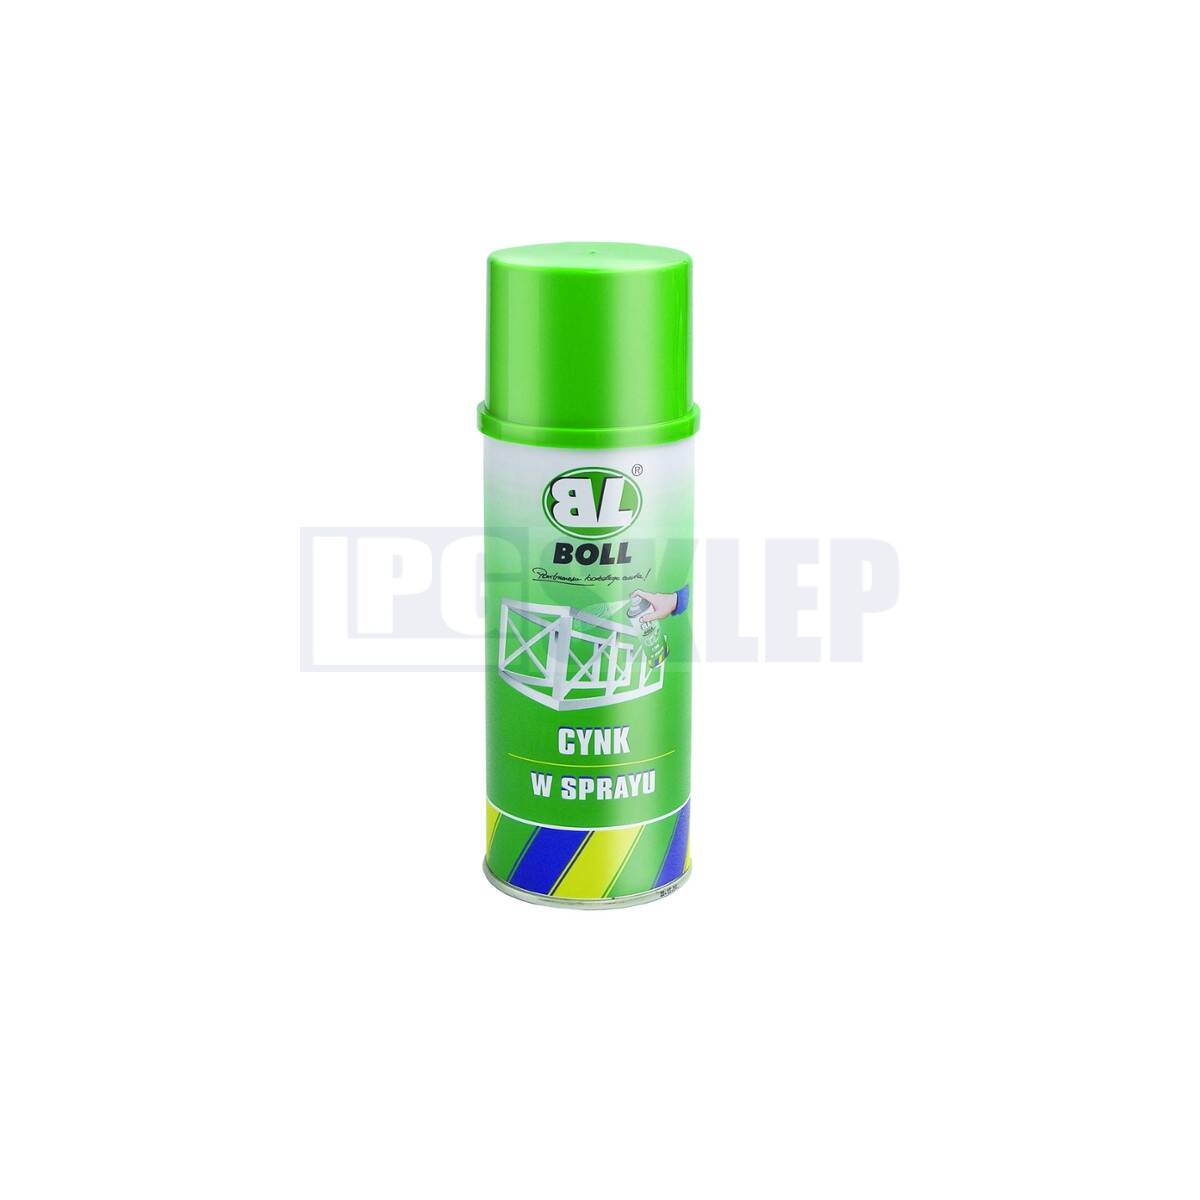 BOLL Cynk - spray 400 ml (Photo 1)